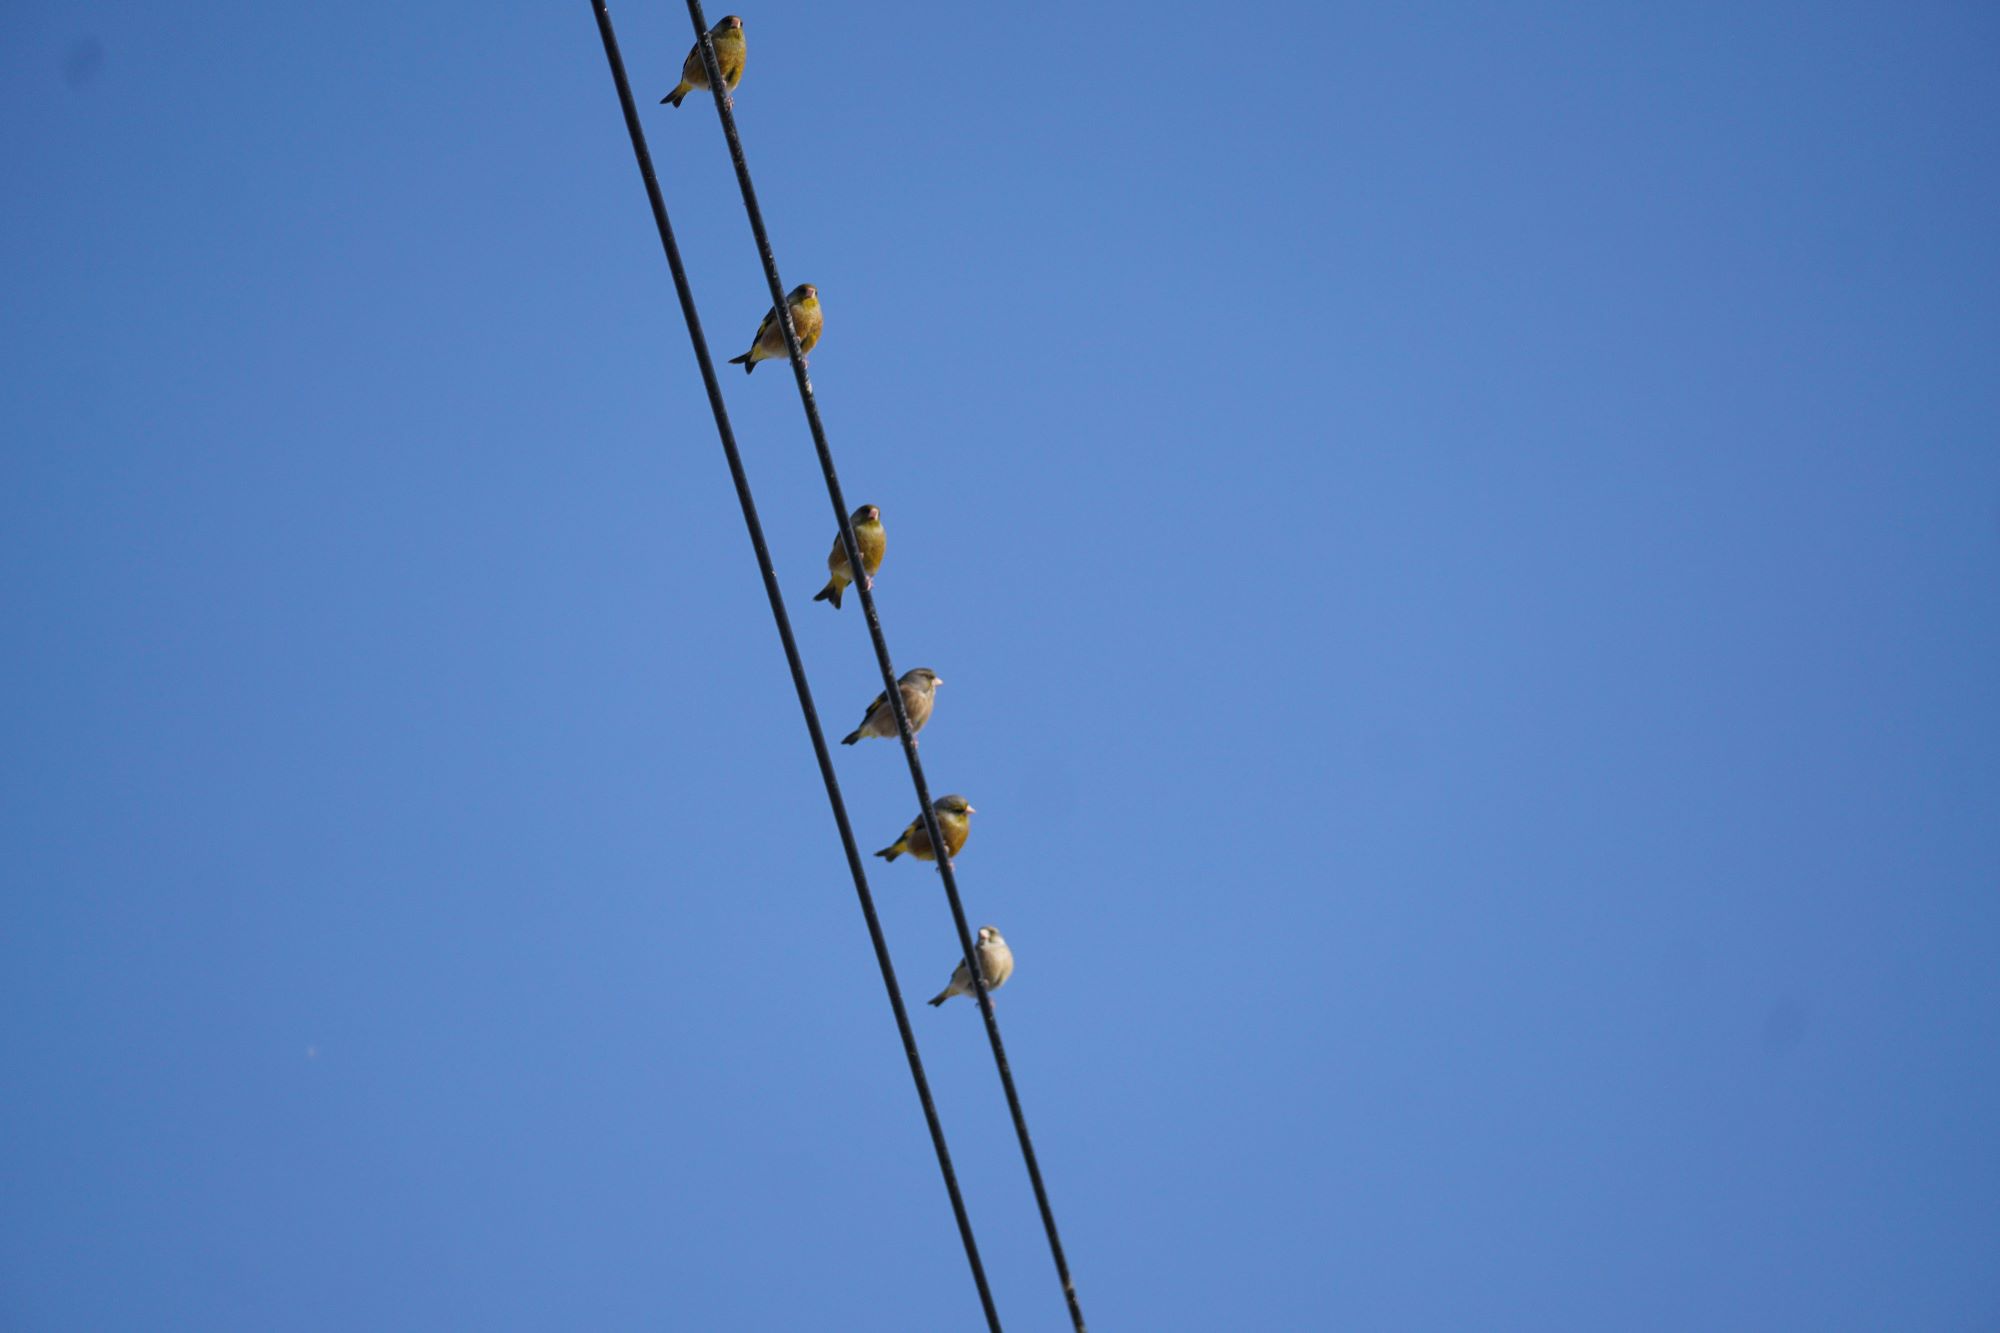 파란 하늘&#44; 올려다 본 사진&#44; 전깃줄에 앉은 작은 새 6마리&#44; 새들의 부리&#44; 목과 배만 보이는 사진&#44;